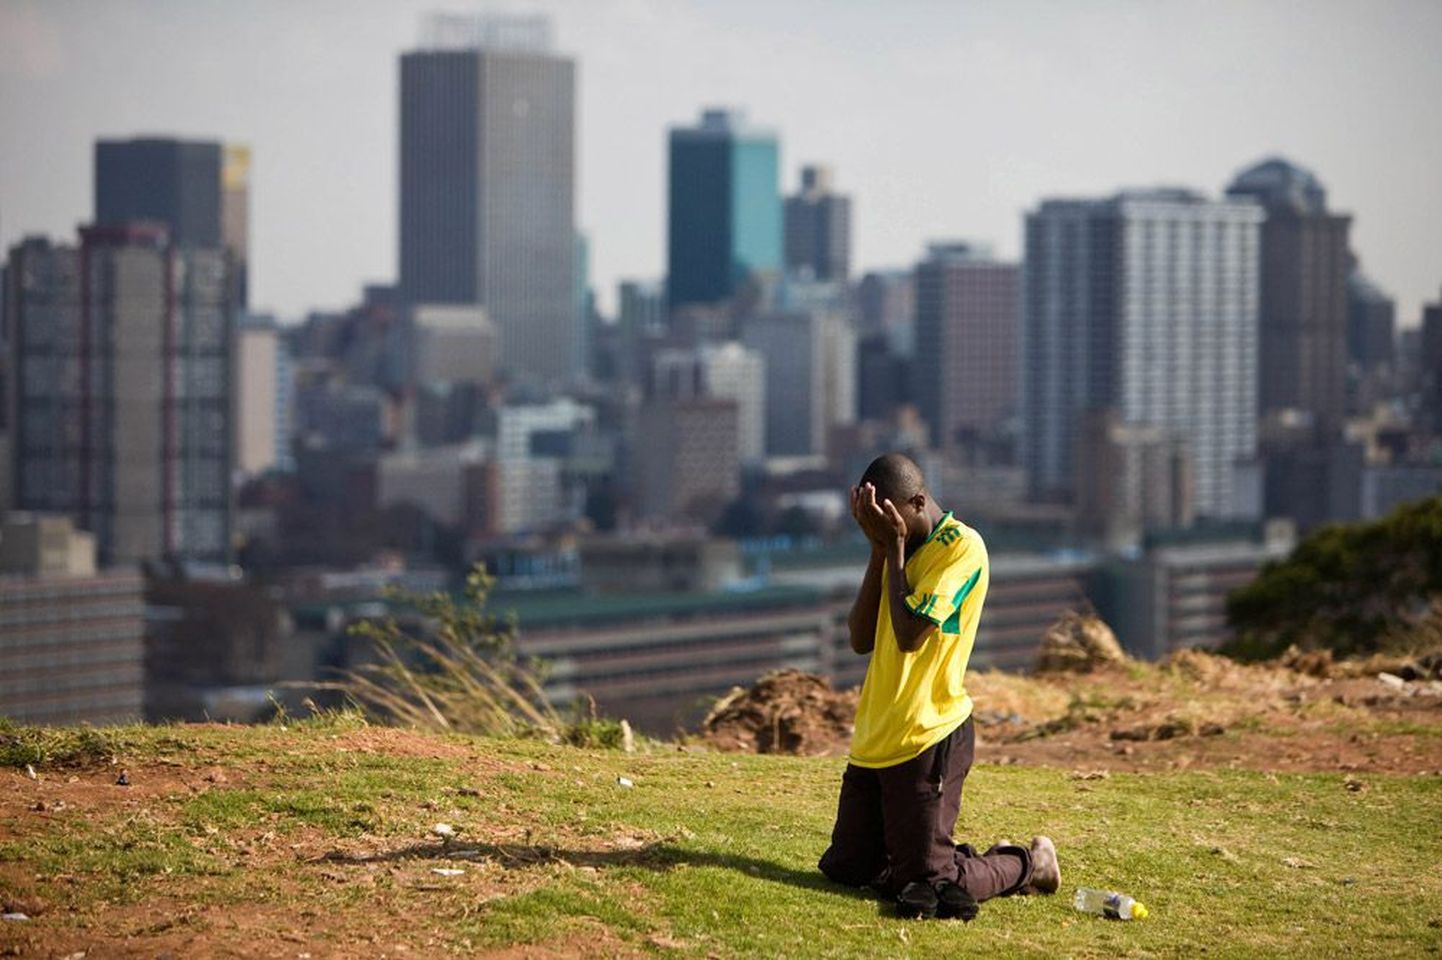 Kas kõigevägevam on kurt? Lõuna-Aafrika Vabriigi meeskonna võistlusvormis mees palvetamas Johannesburgis Ellis Parki staadioni lähedal oma lemmikute võidu nimel. Aga palved ei aita. LAV kaotas ka oma teise mängu — Uruguayle alistuti koguni 0:3.